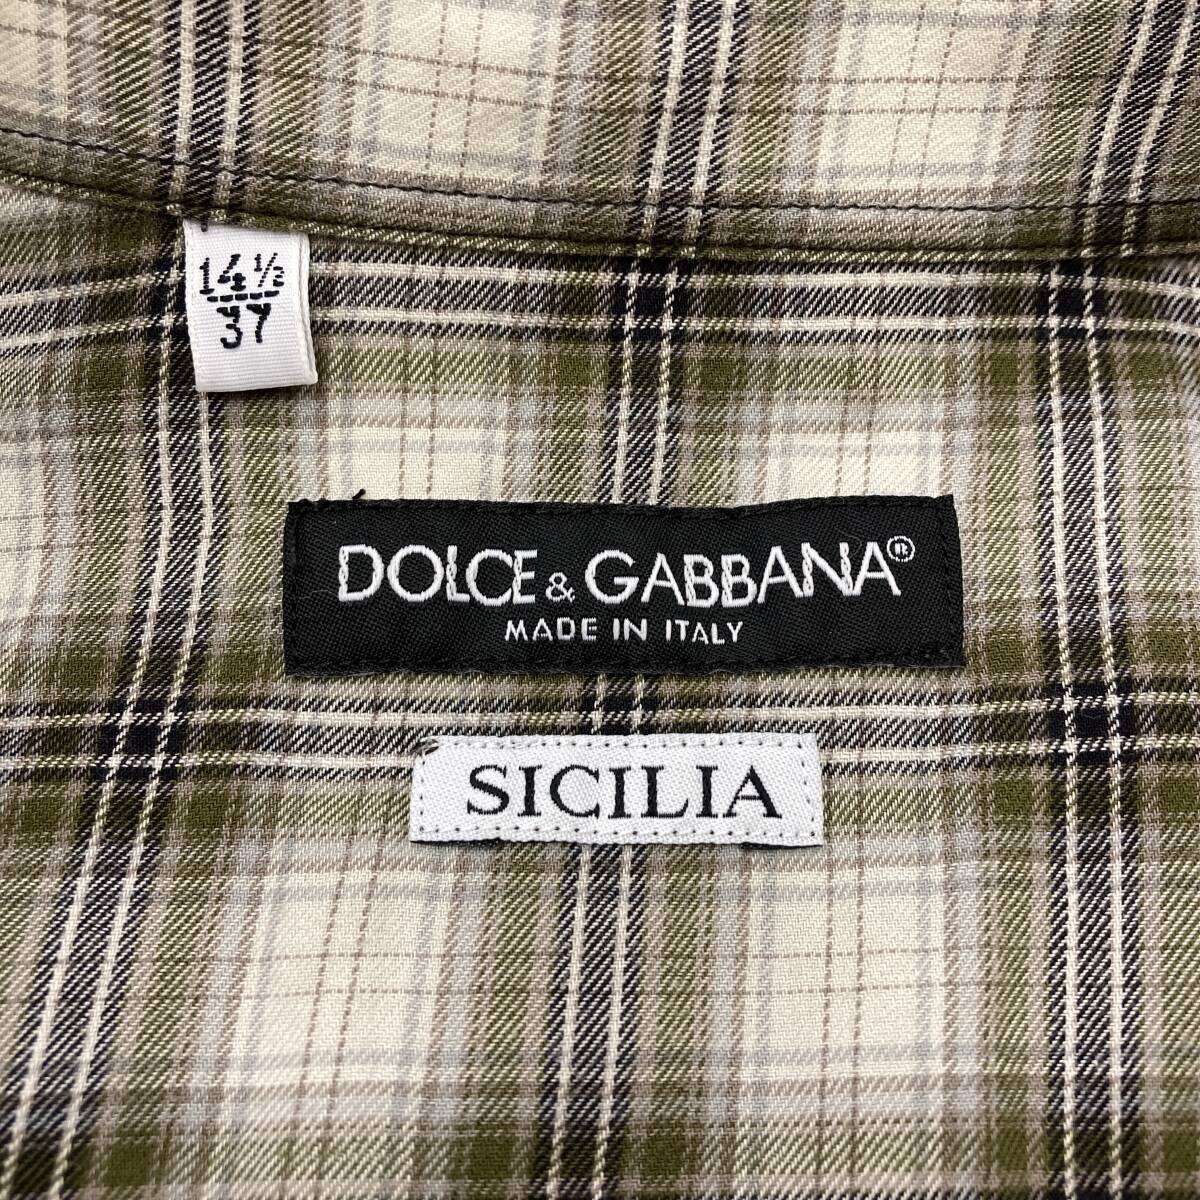 DOLCE&GABBANA SICILIA Italy made check Western long sleeve shirt men's 37 size Dolce & Gabbana Dolce&Gabbana D&G 4010118